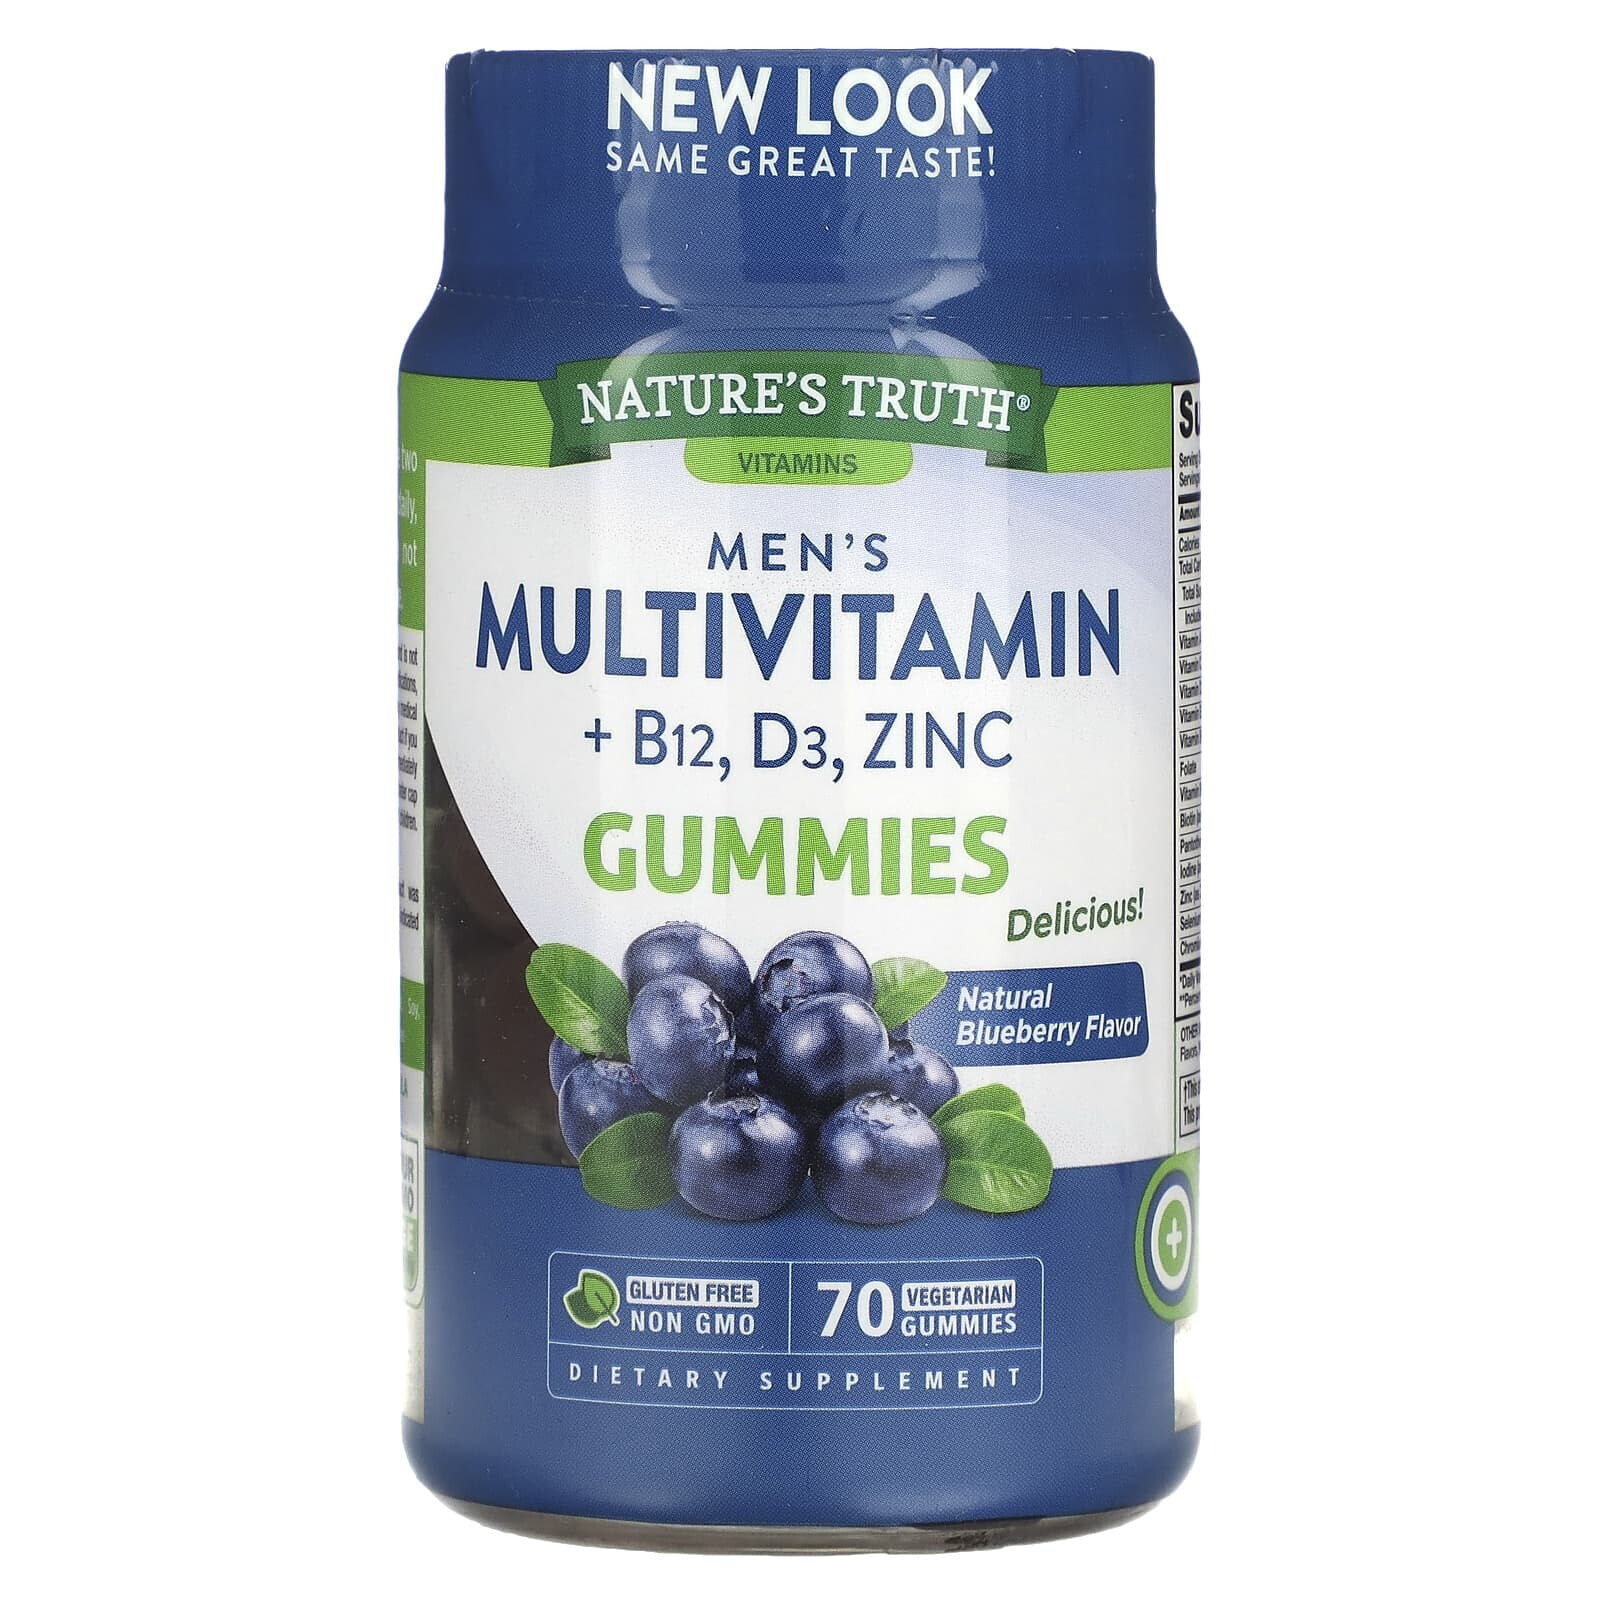 Men's Multivitamin + B-12, D3, Zinc, Natural Blueberry, 70 Vegetarian Gummies